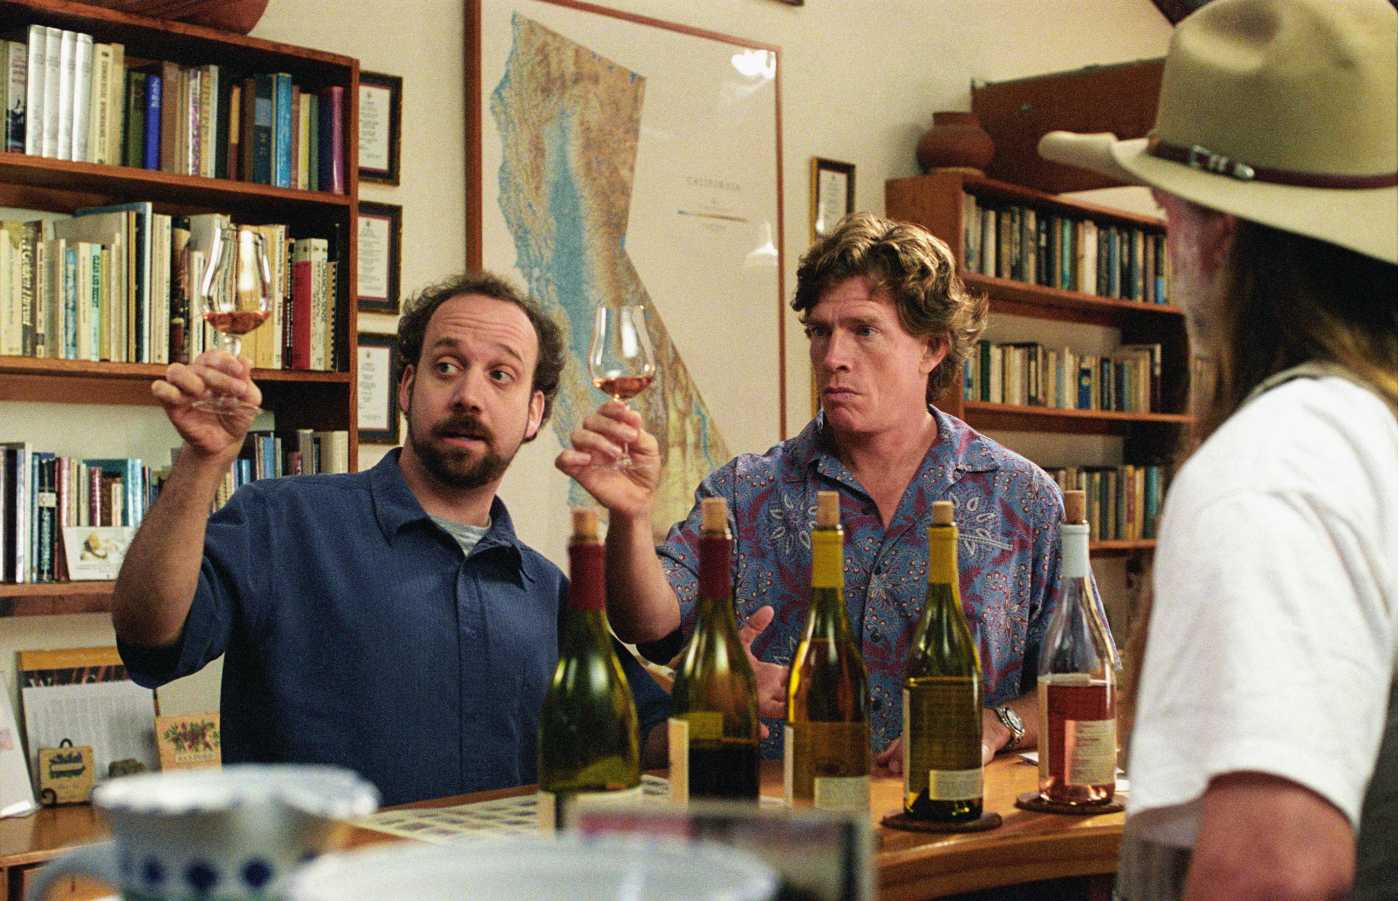 С бокалом по жизни: 20 фильмов о вине и виноделии